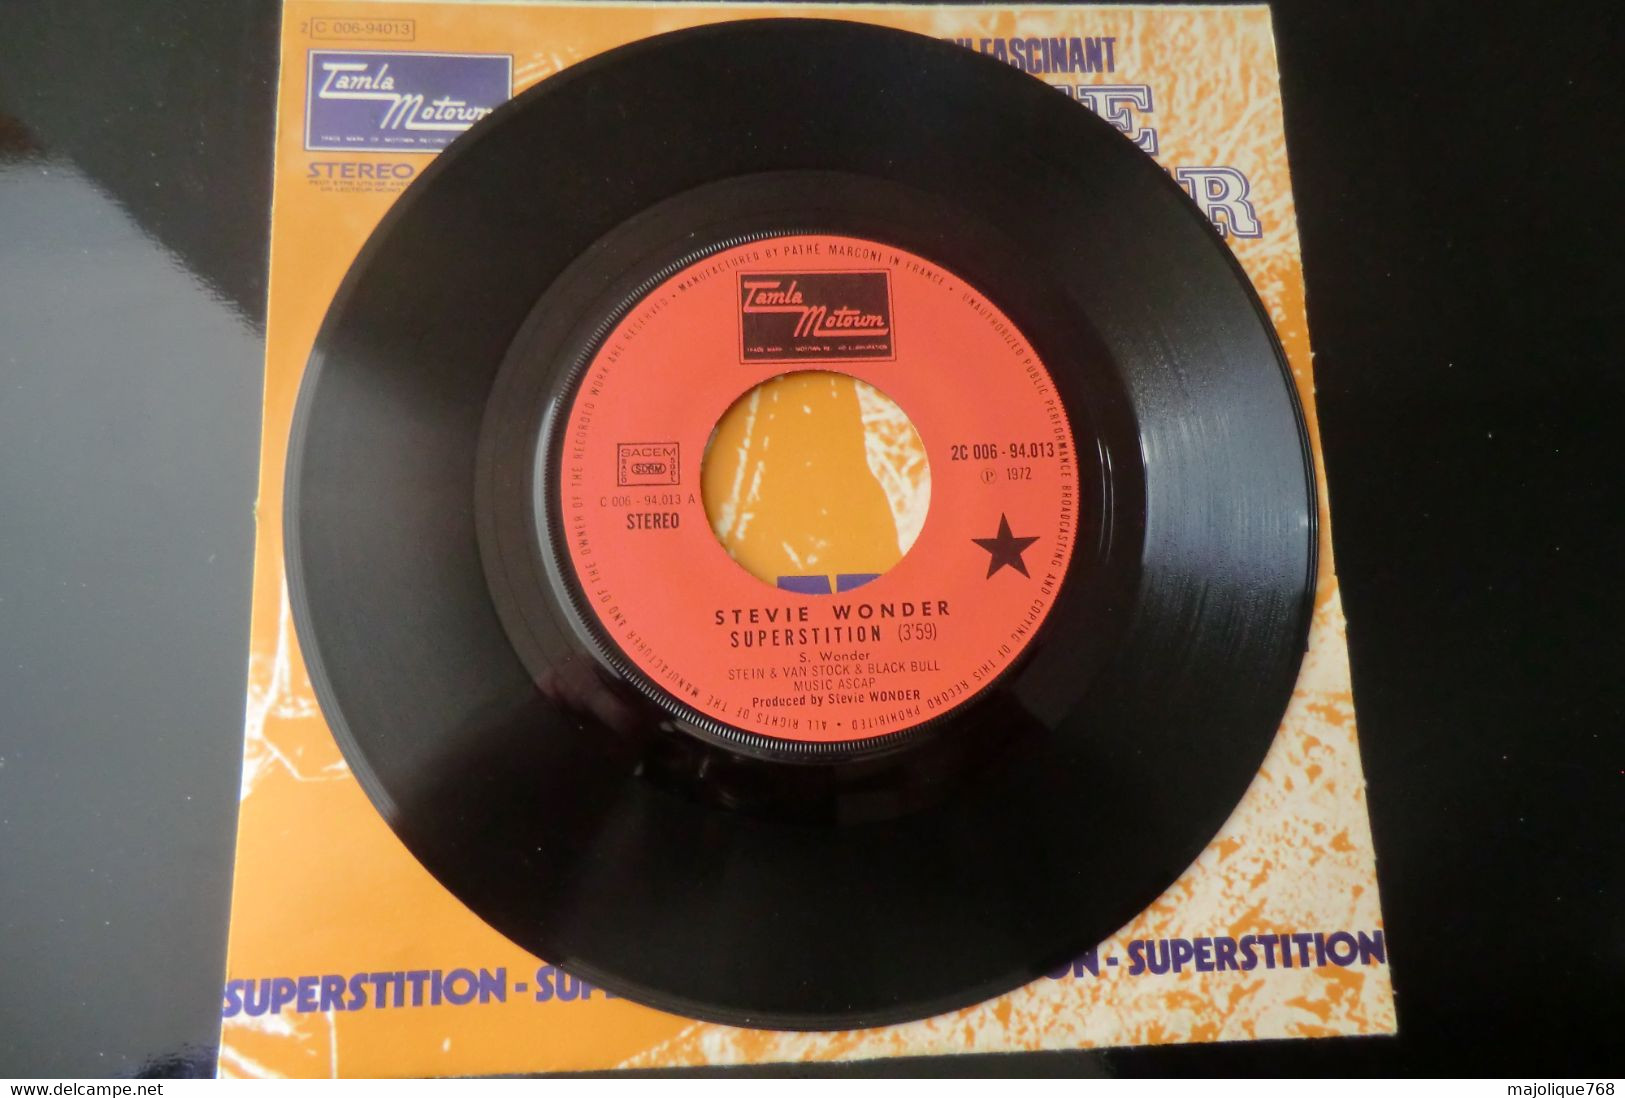 Disque 45T - Stevie Wonder - Superstition - Tamla Motown 2 C 006-94013 - France 1972 - Soul - R&B